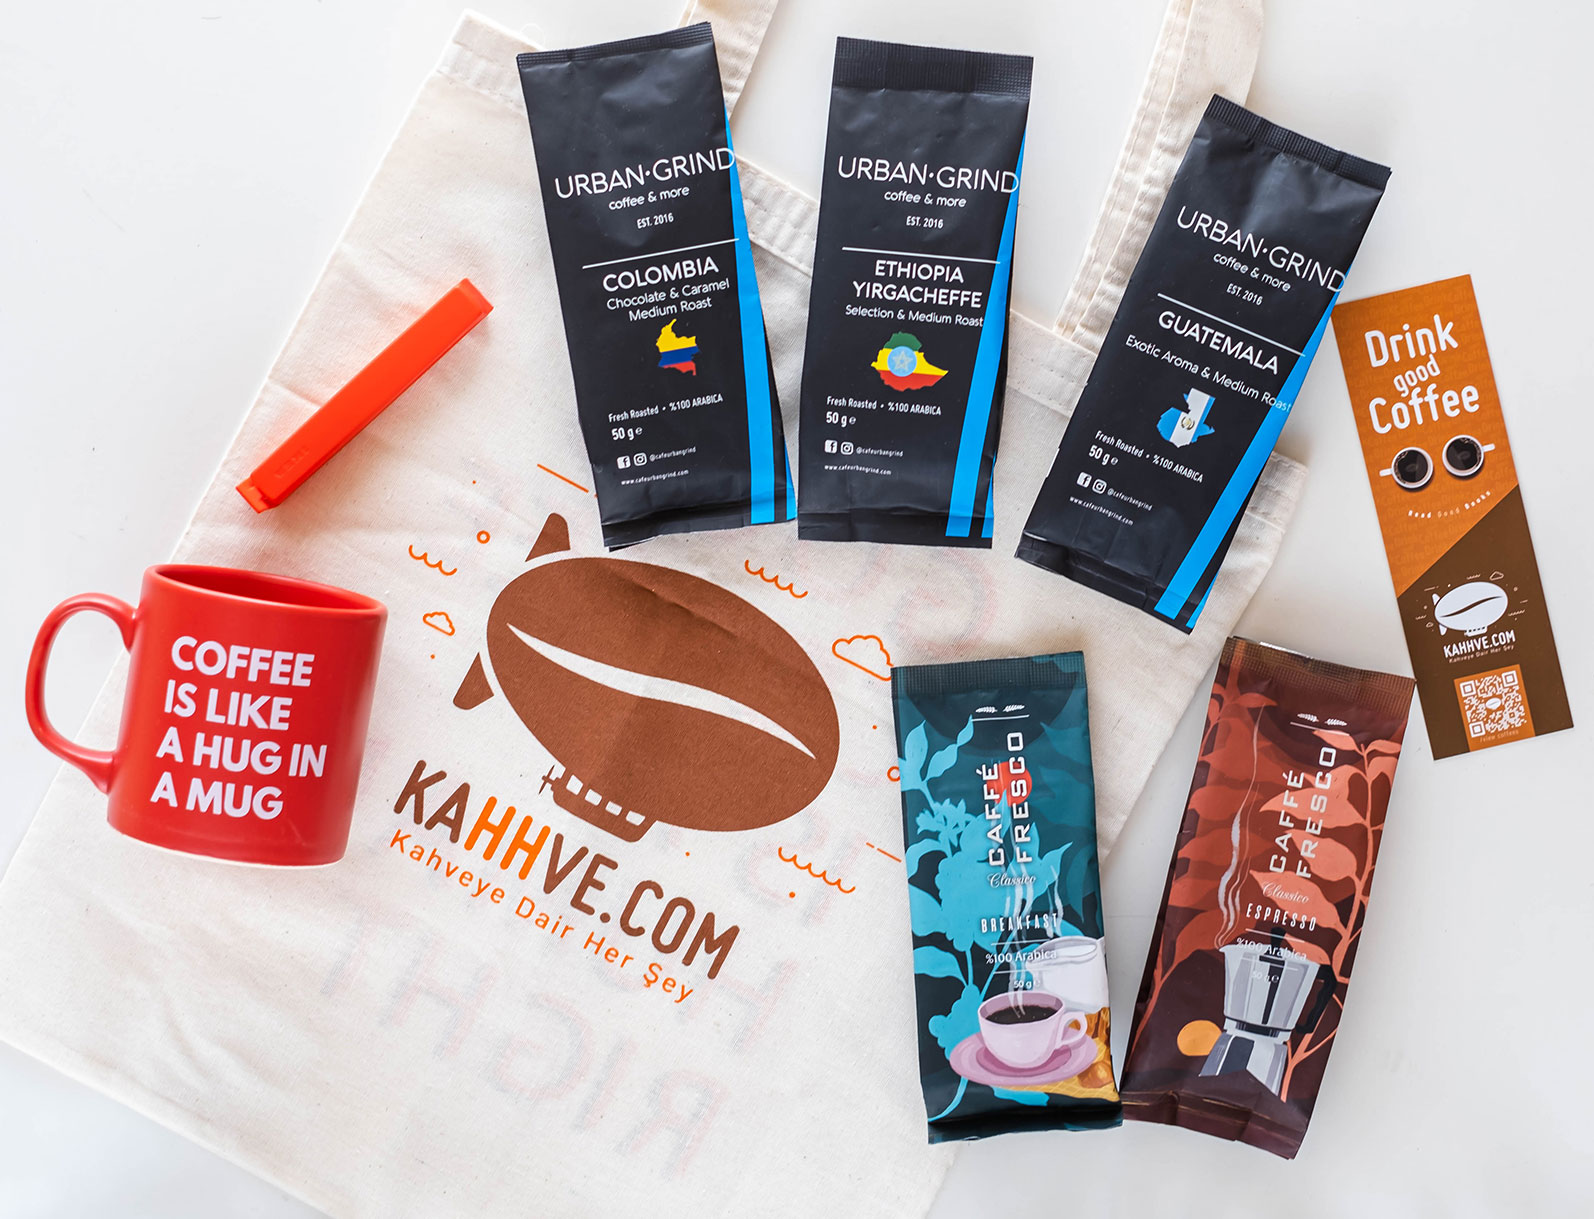 Kahhve.com’da tüm kahve alışverişlerinde %20 Paracık kazan.%20 Paracık kazan -1